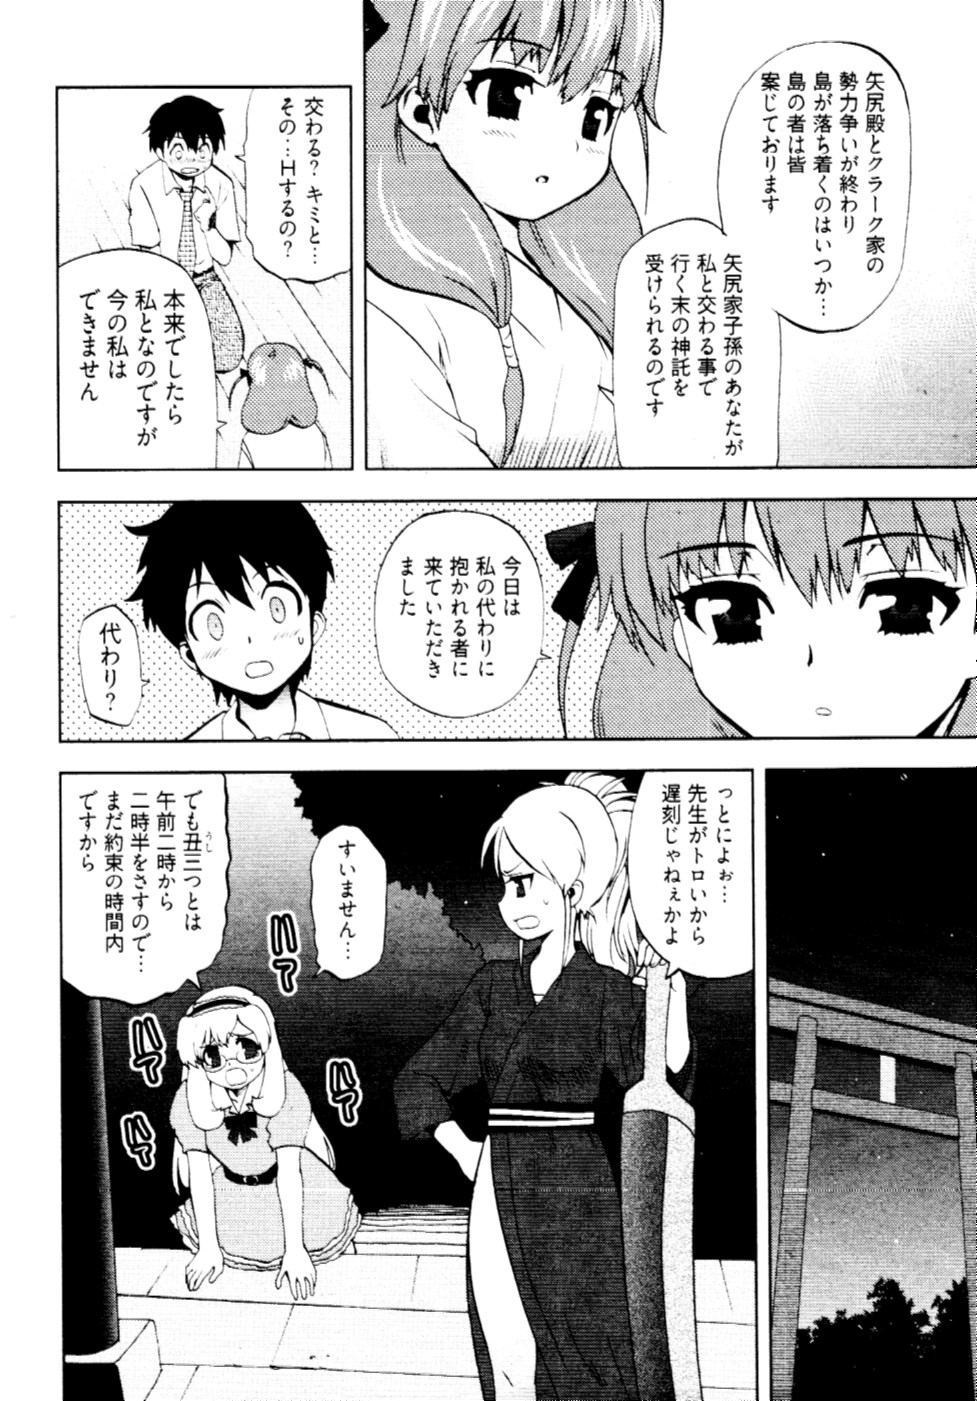 [Togami Shin] Tonosama no Nanahon yari Vol.2 page 9 full